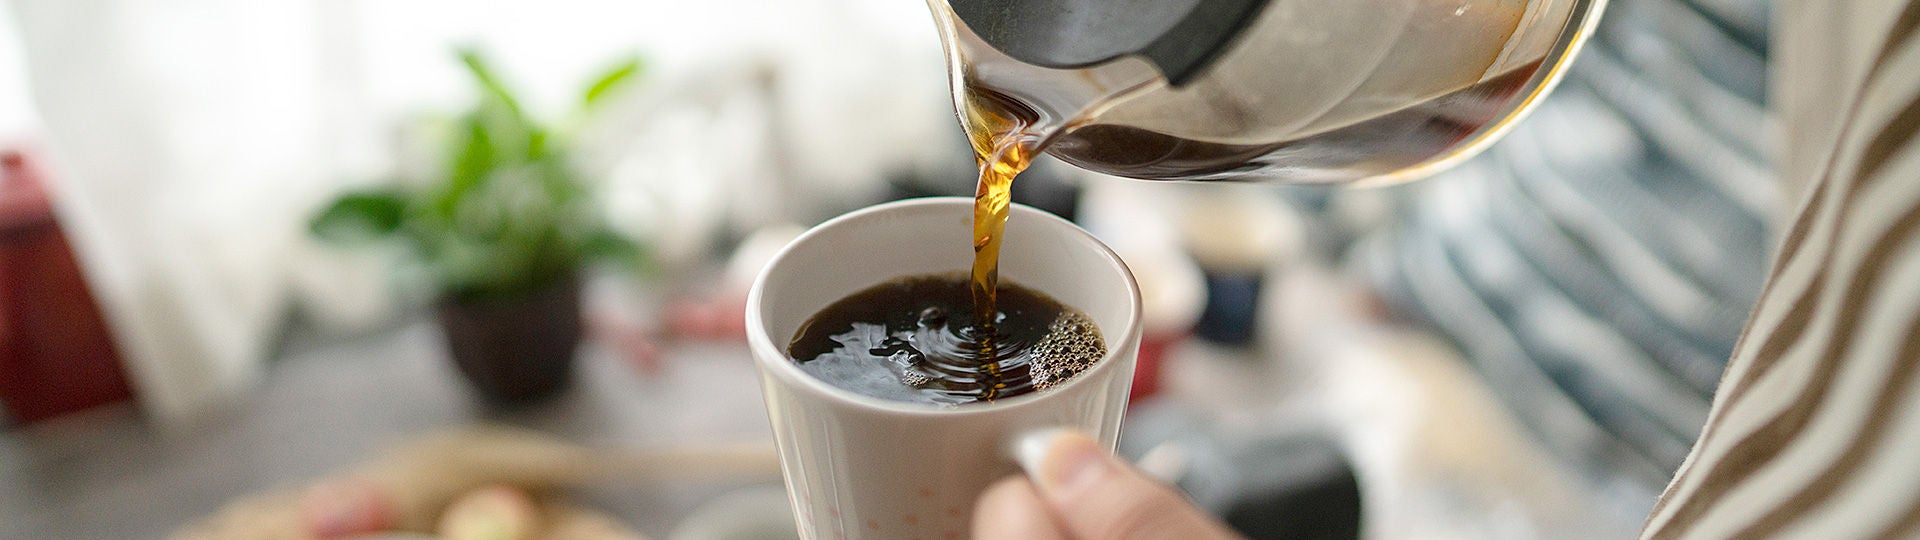 Filterkaffee beugt Herzkrankheiten vor.